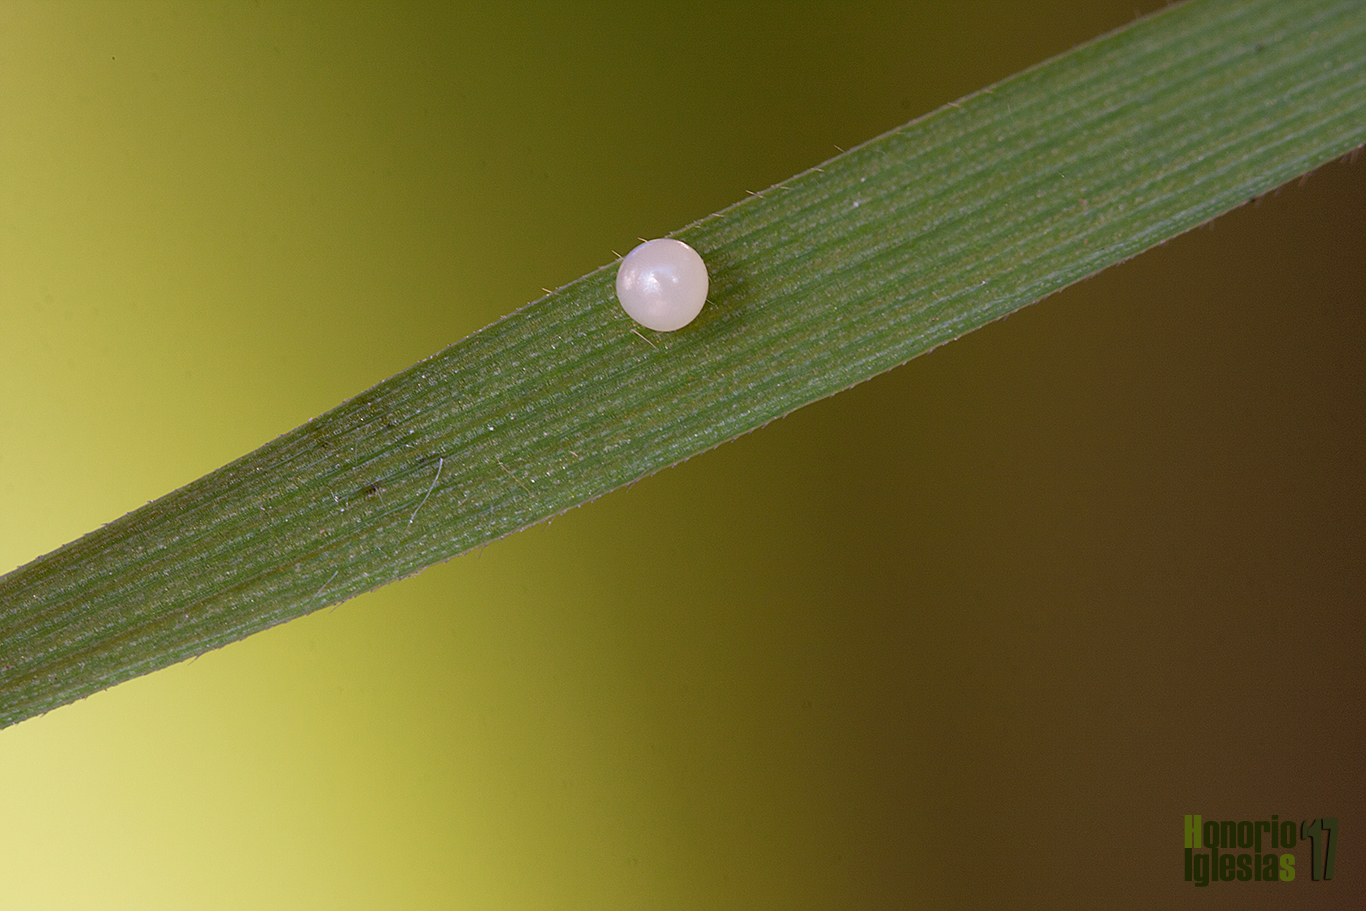 Huevo de mariposa ondulada o maculada (Pararge aegeria) sobre gramínea.